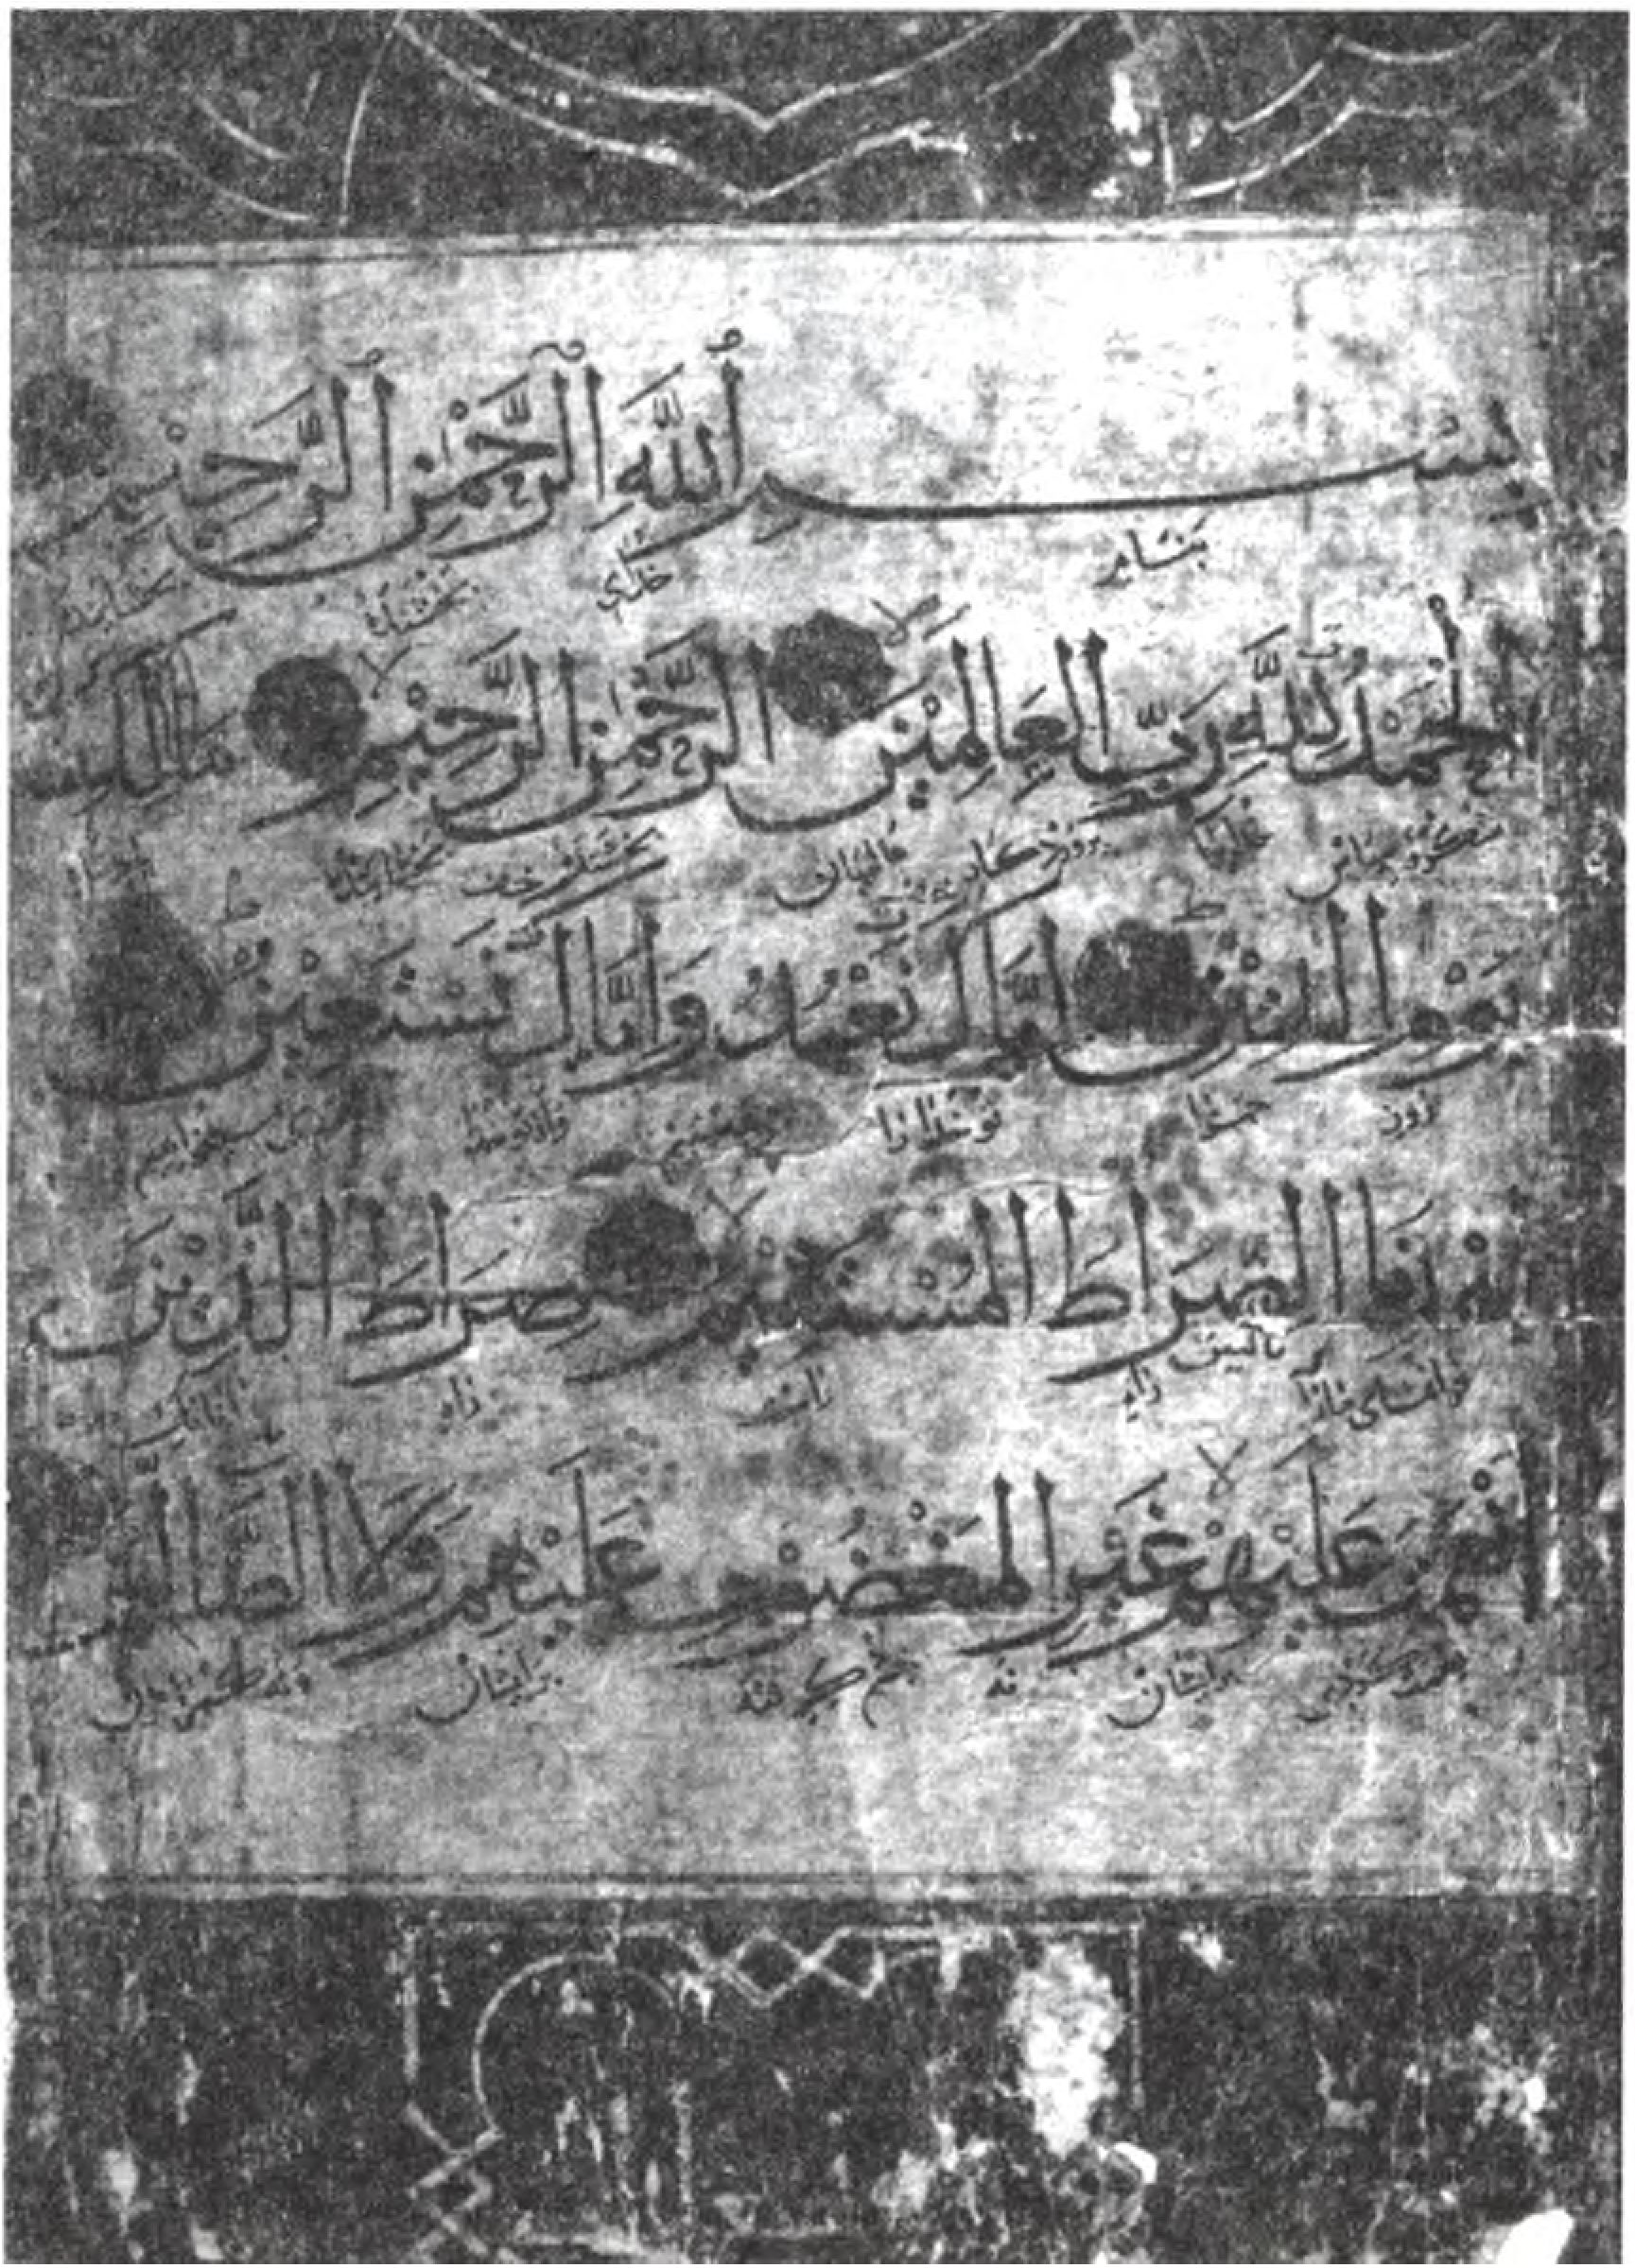 Коран Хан-Джами. 714 г. Хиджры. Снимок 1925 г.